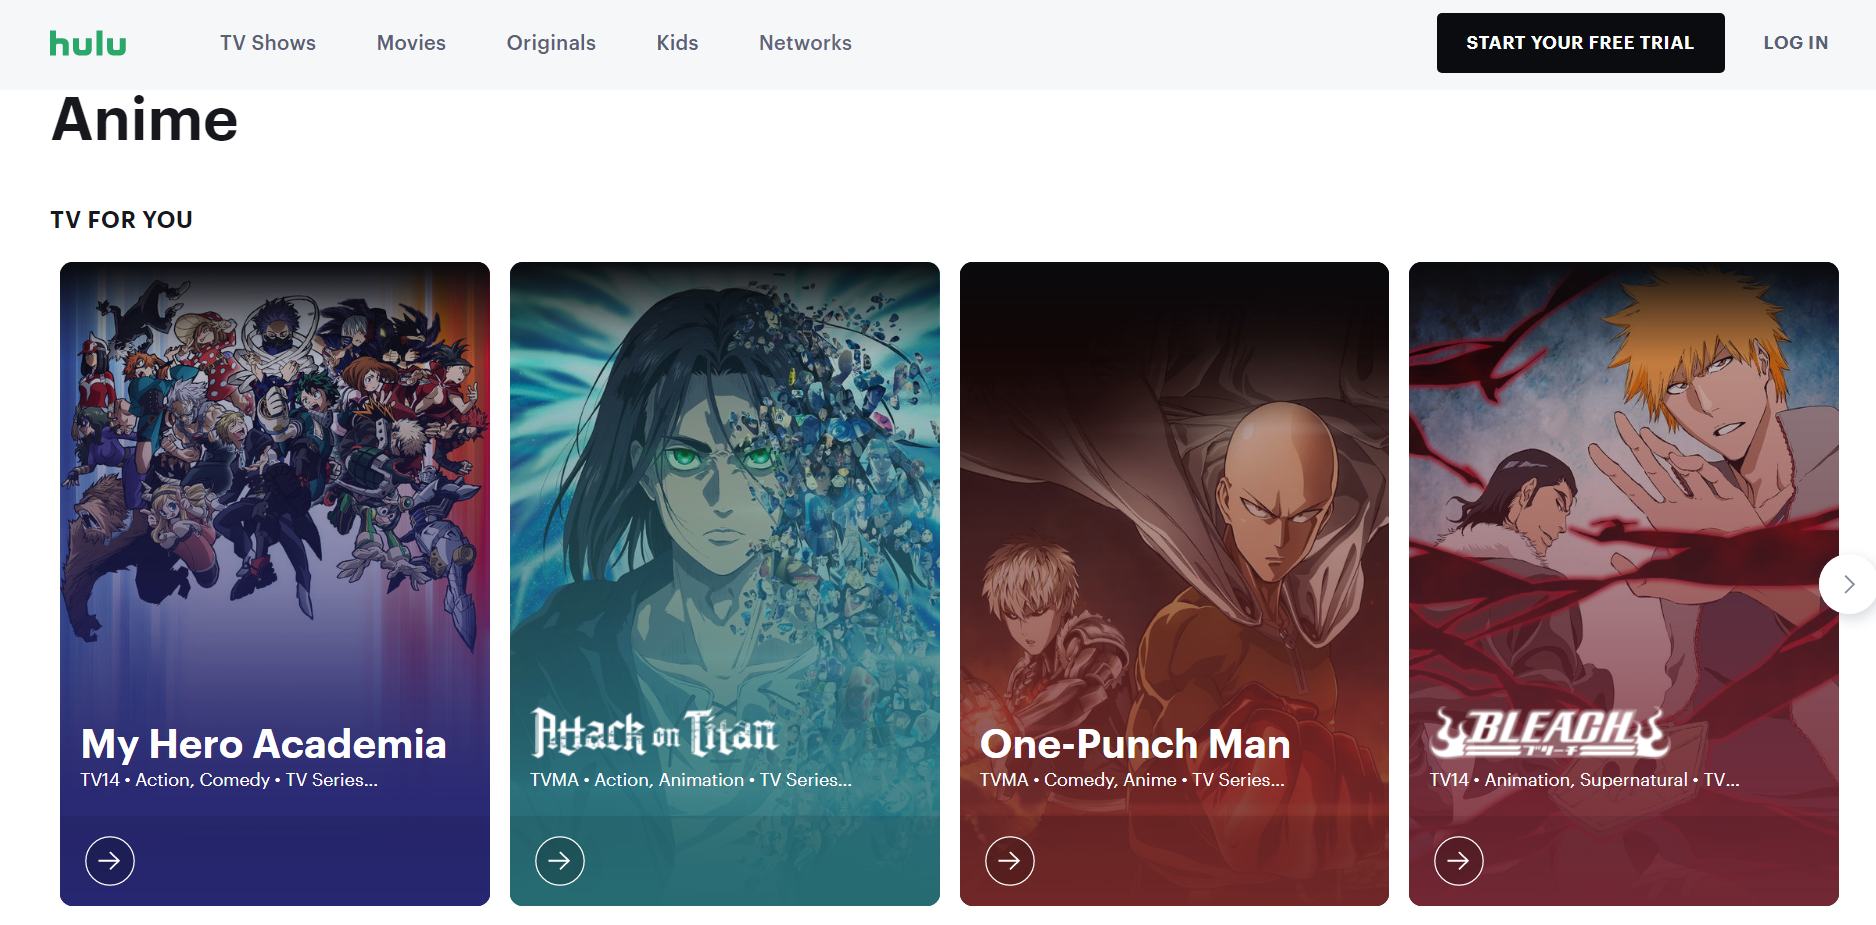 Hulu Anime hub